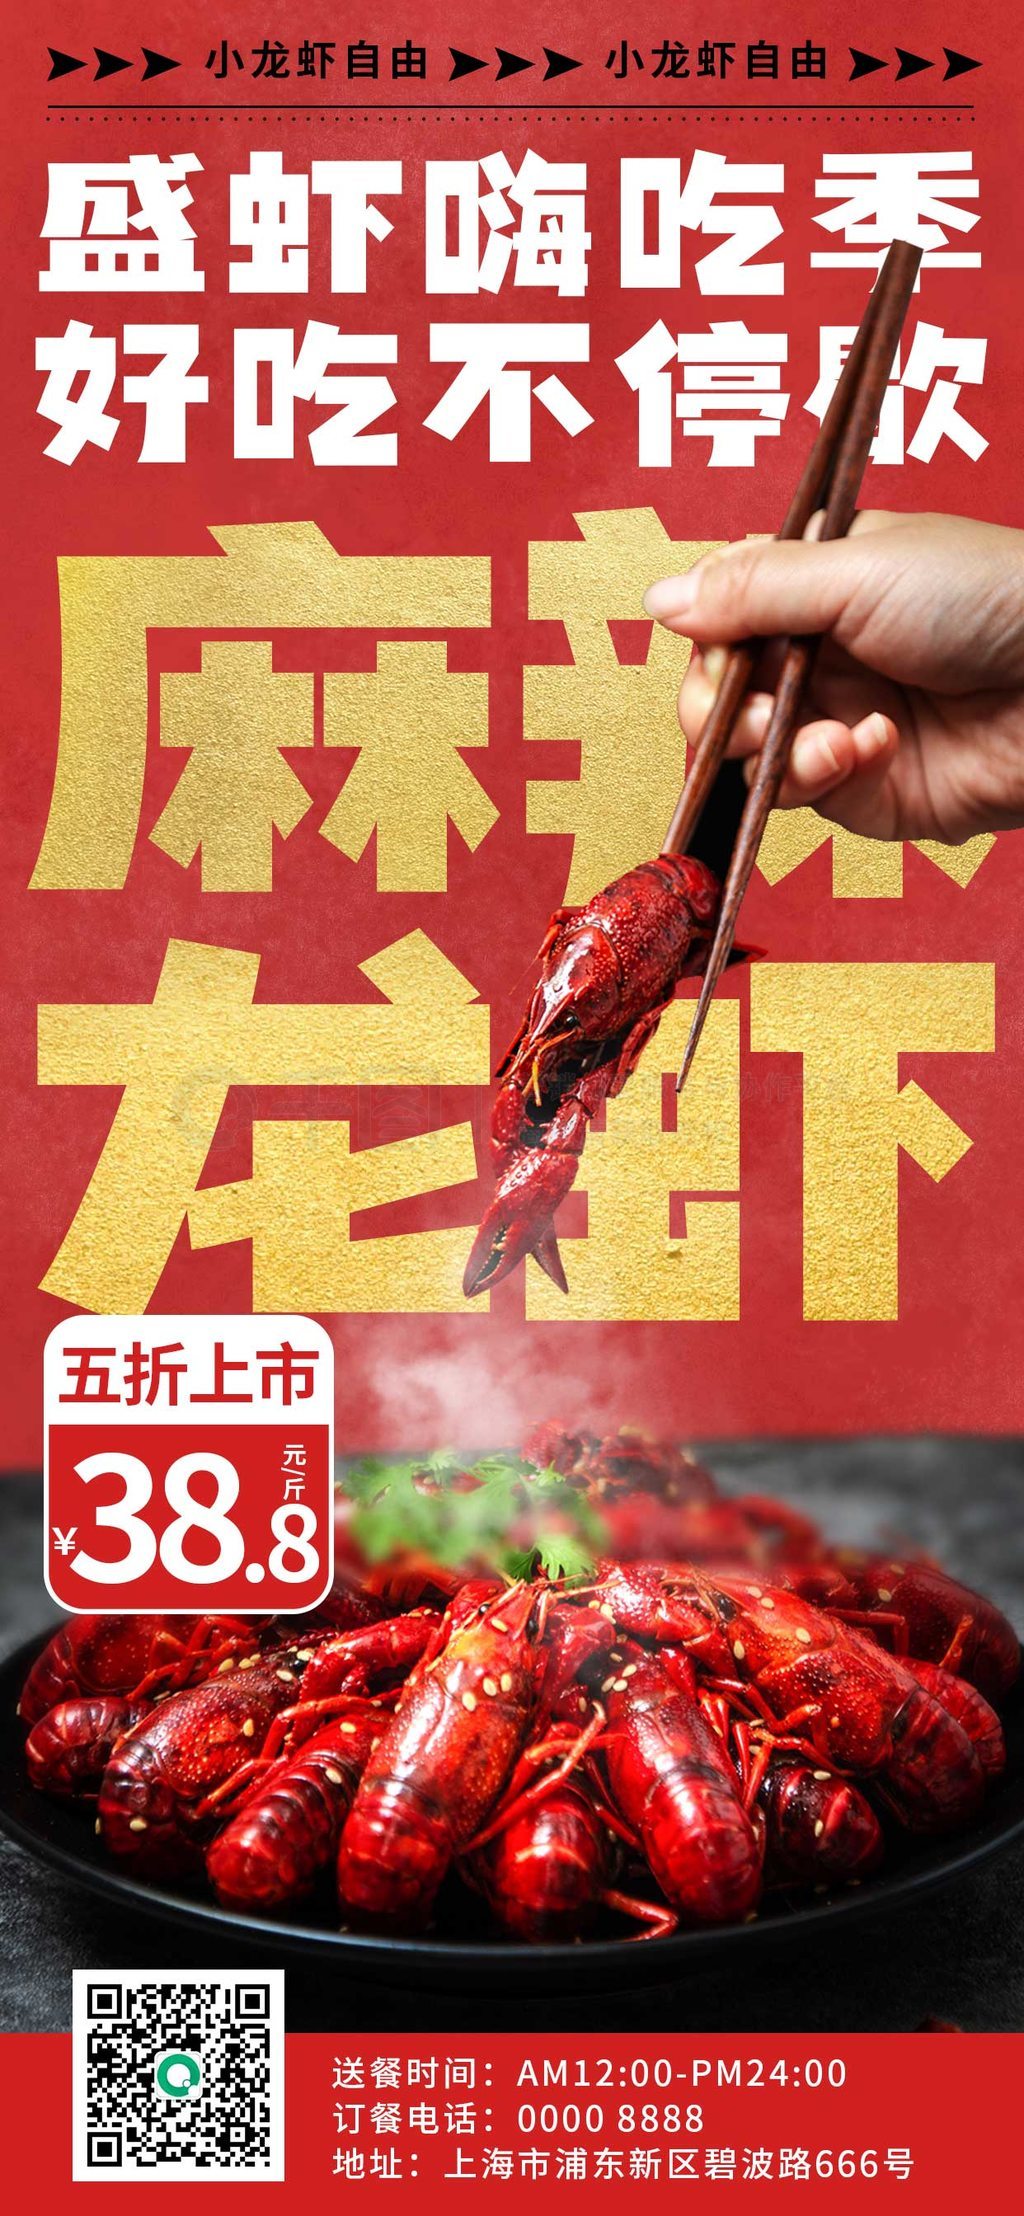 简约麻辣小龙虾新品上市促销美食海报